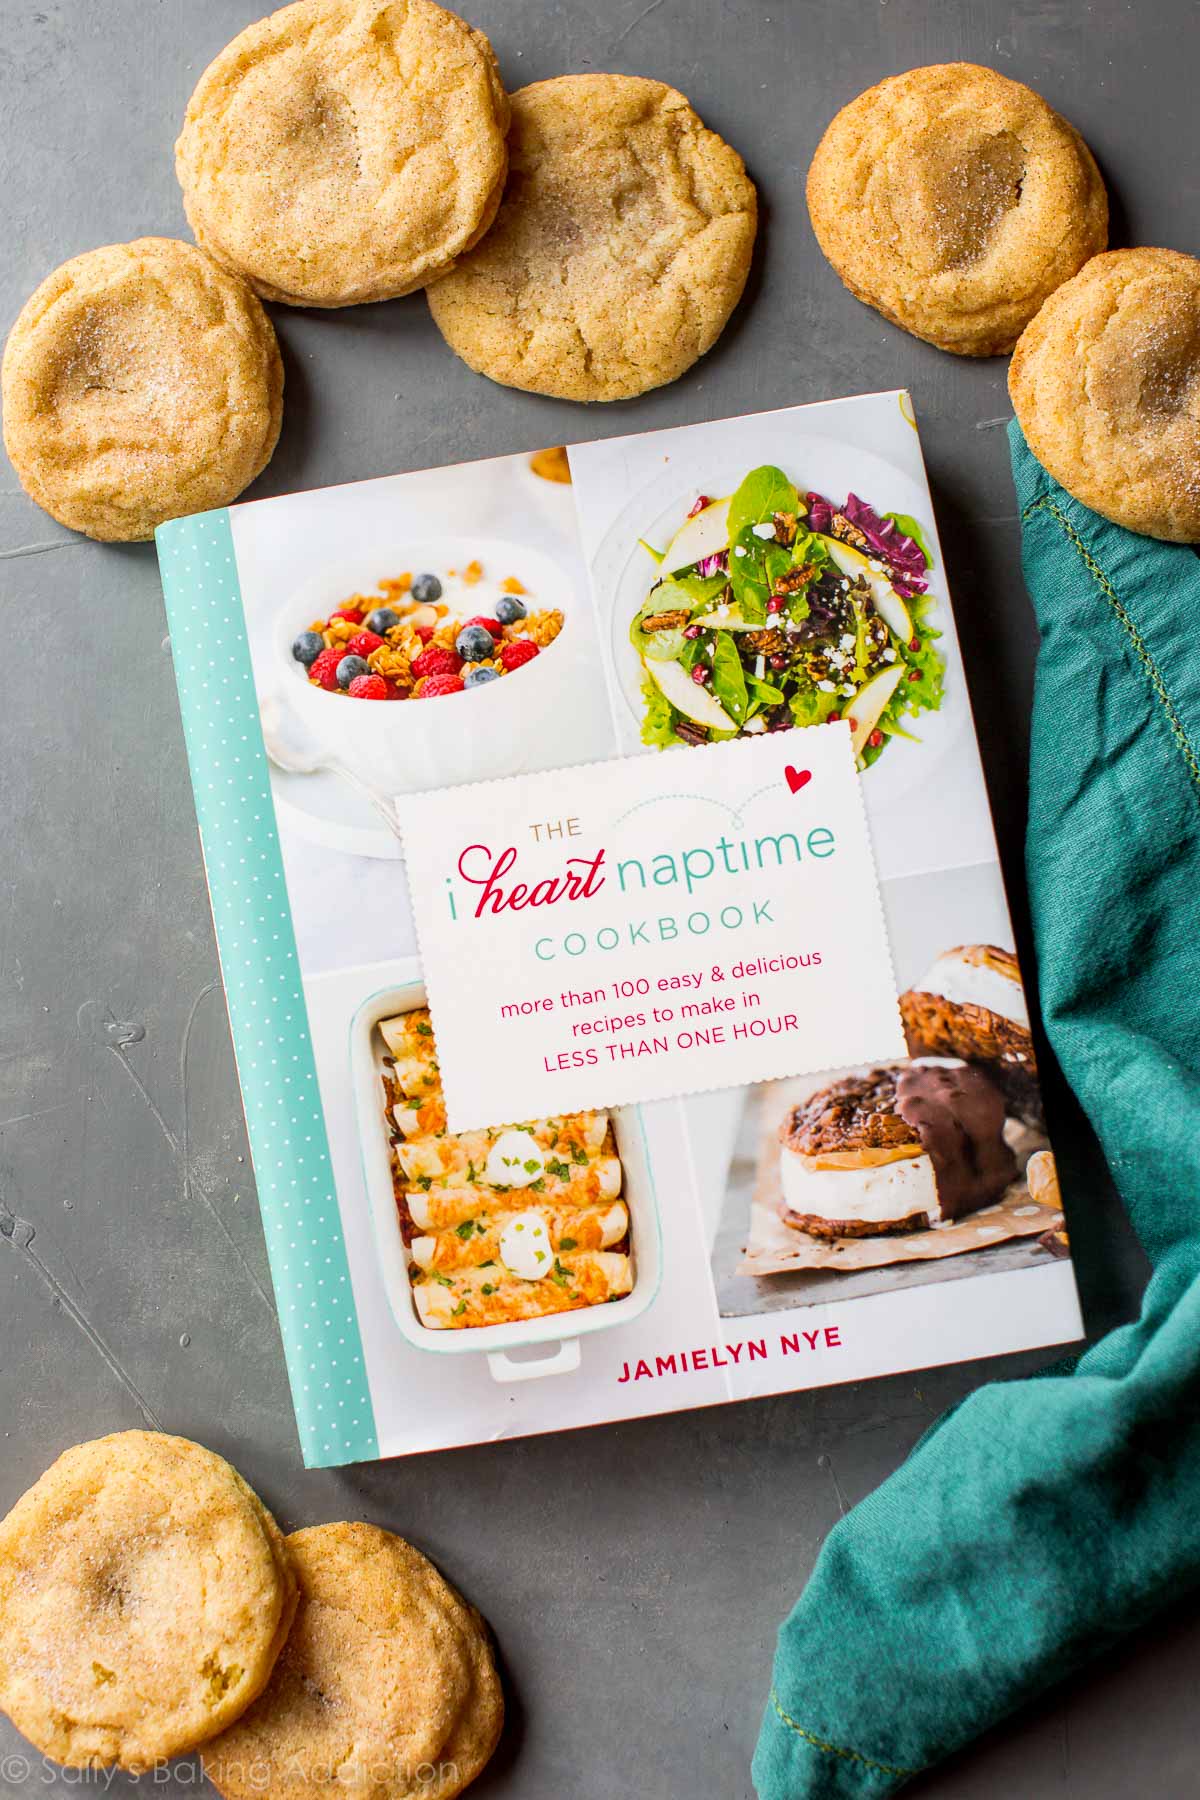 I Heart Naptime cookbook by Jamielyn Nye